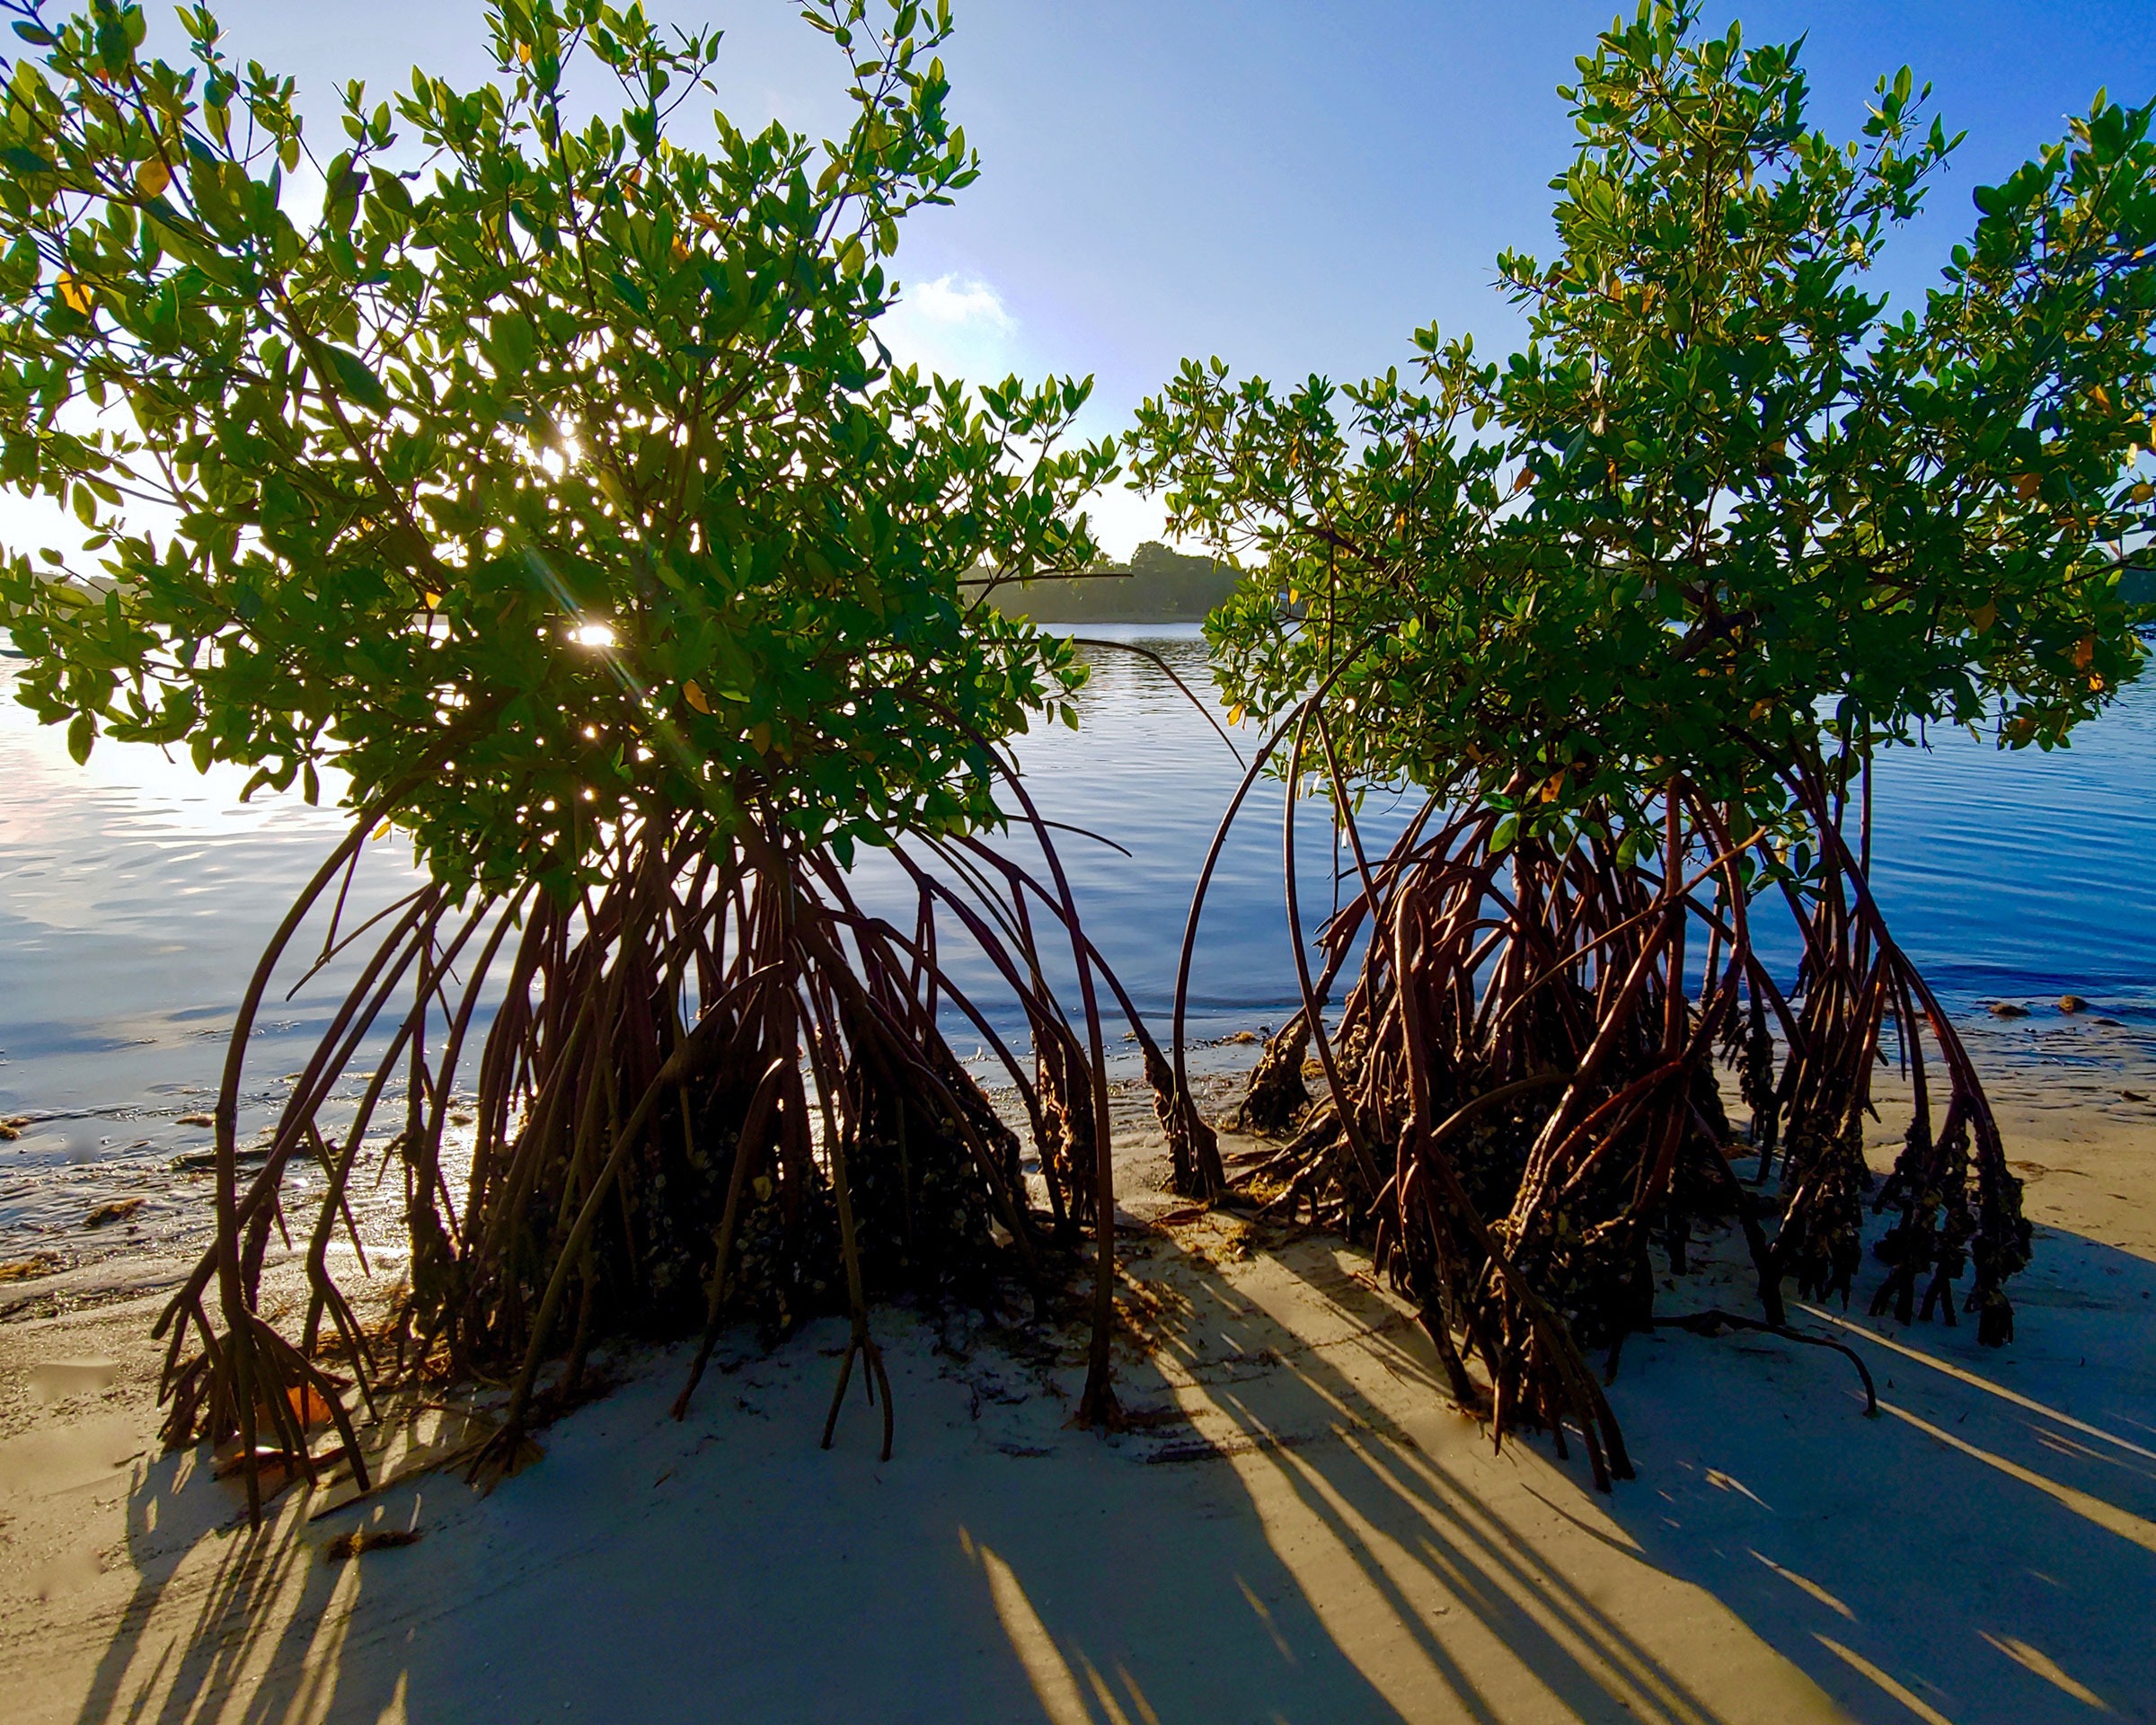 Mangrove Sunrise